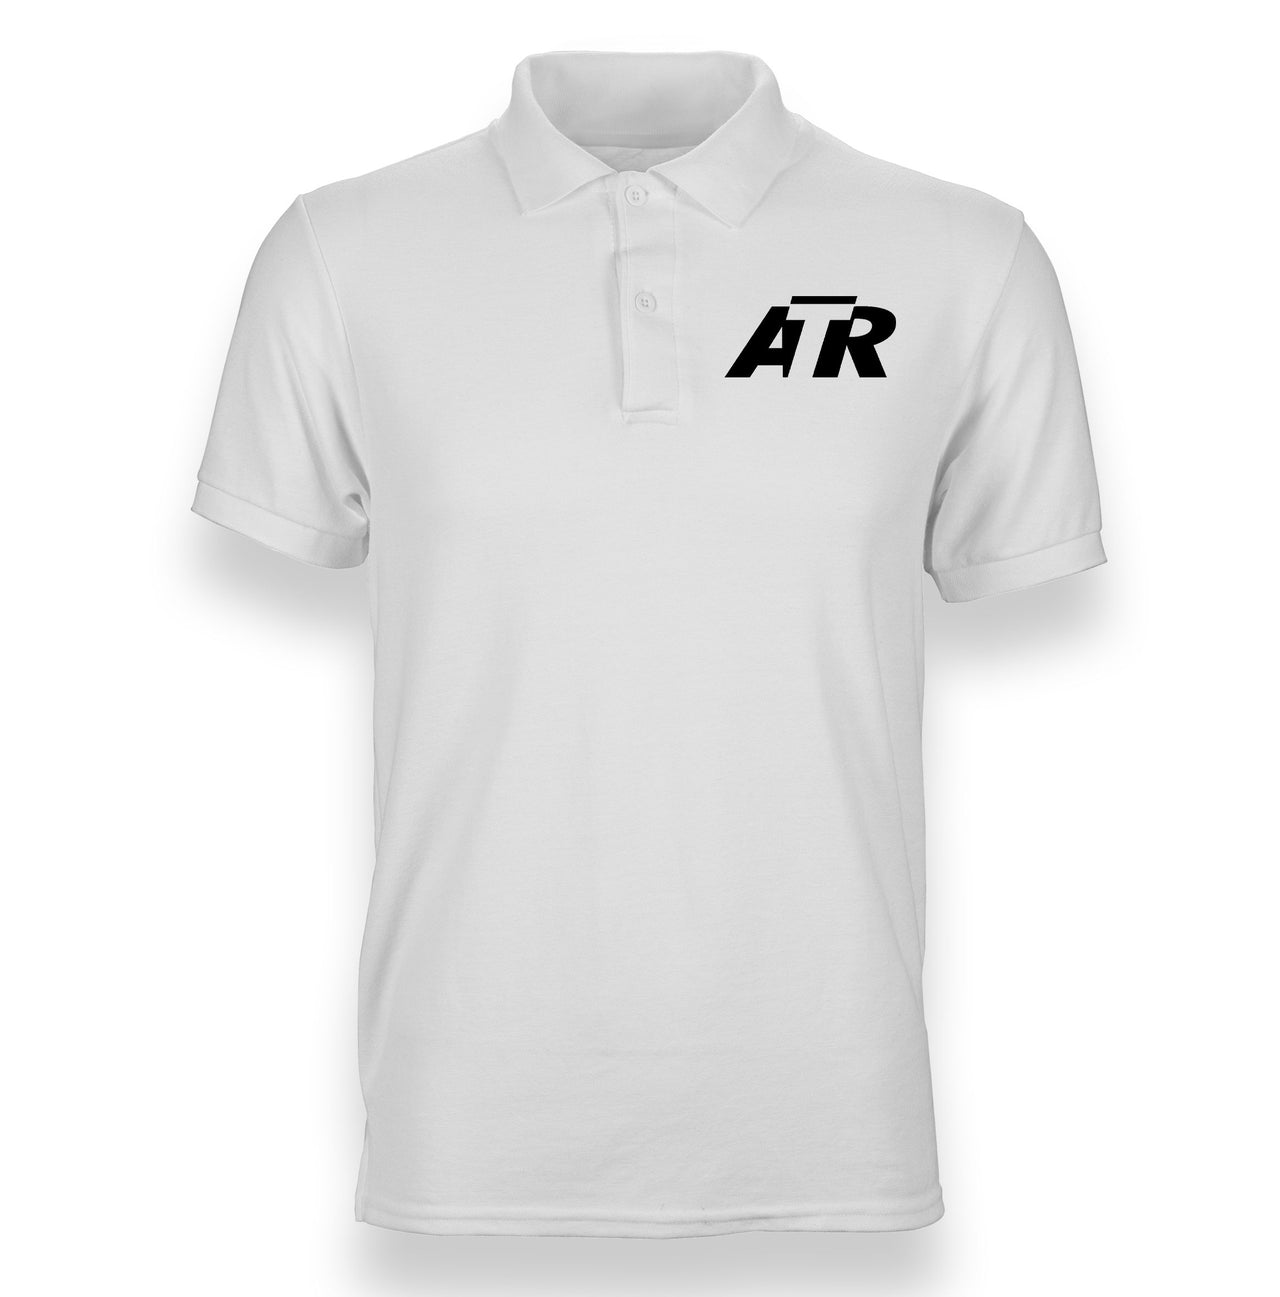 ATR & Text Designed Polo T-Shirts